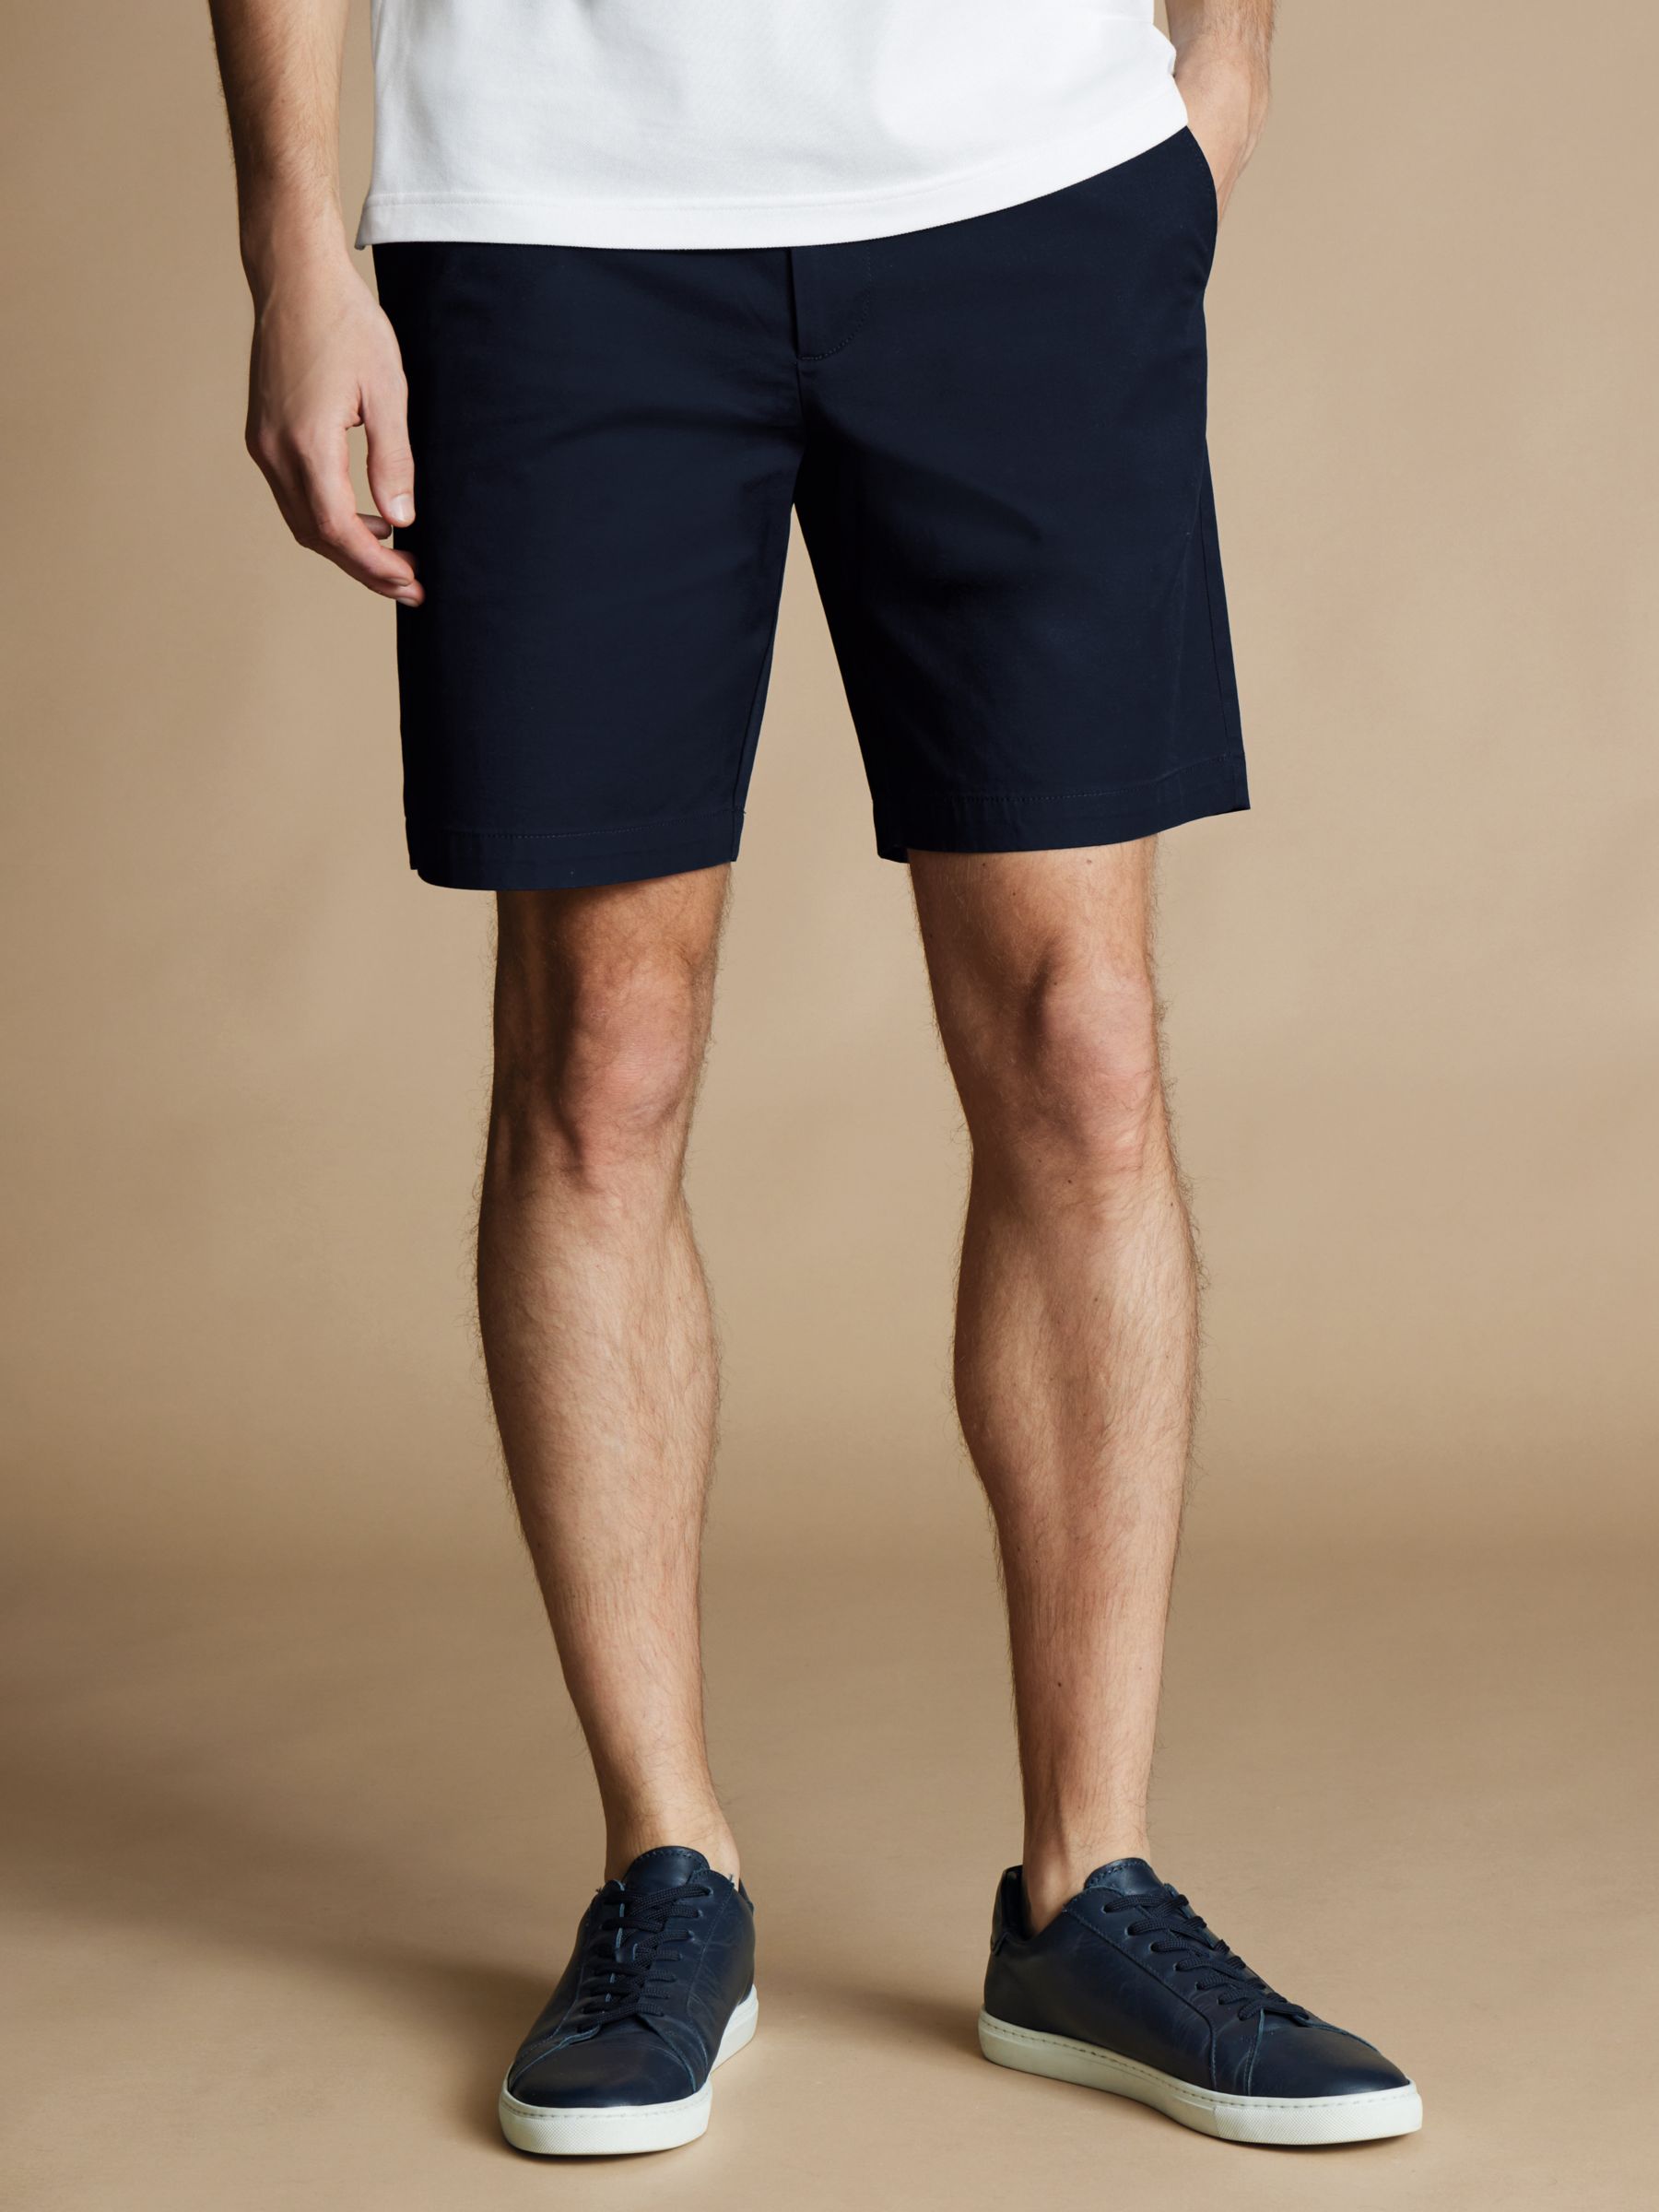 Charles Tyrwhitt Chino Cotton Shorts, Dark Navy, 30